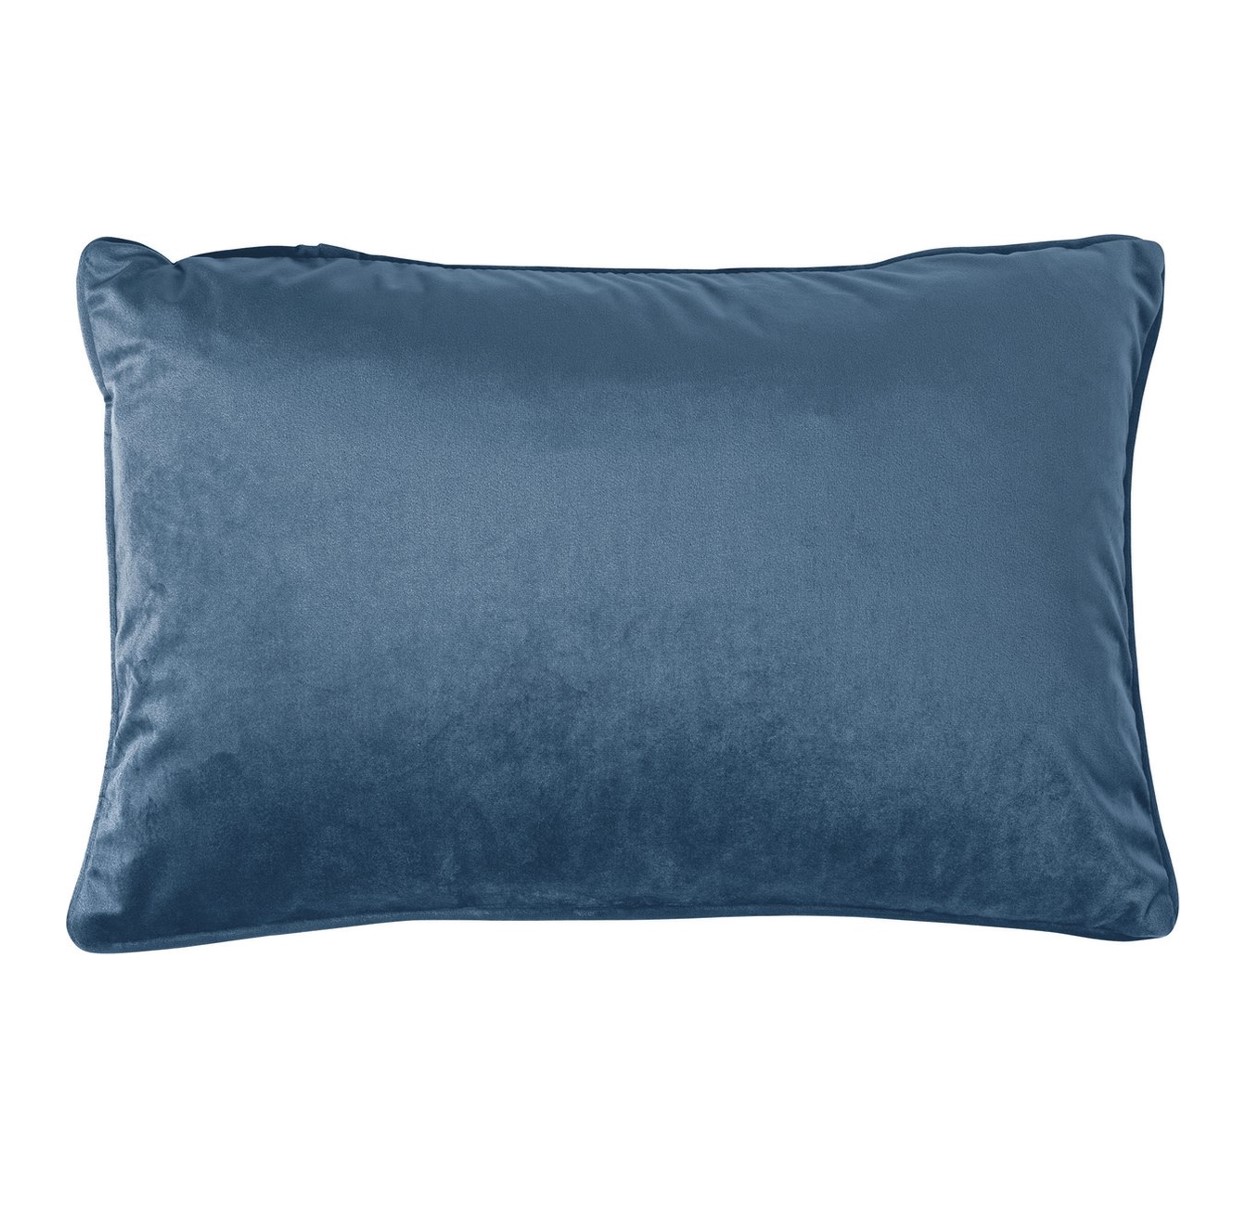 FINN - Sierkussen velvet Real Teal 40x60 cm - blauw